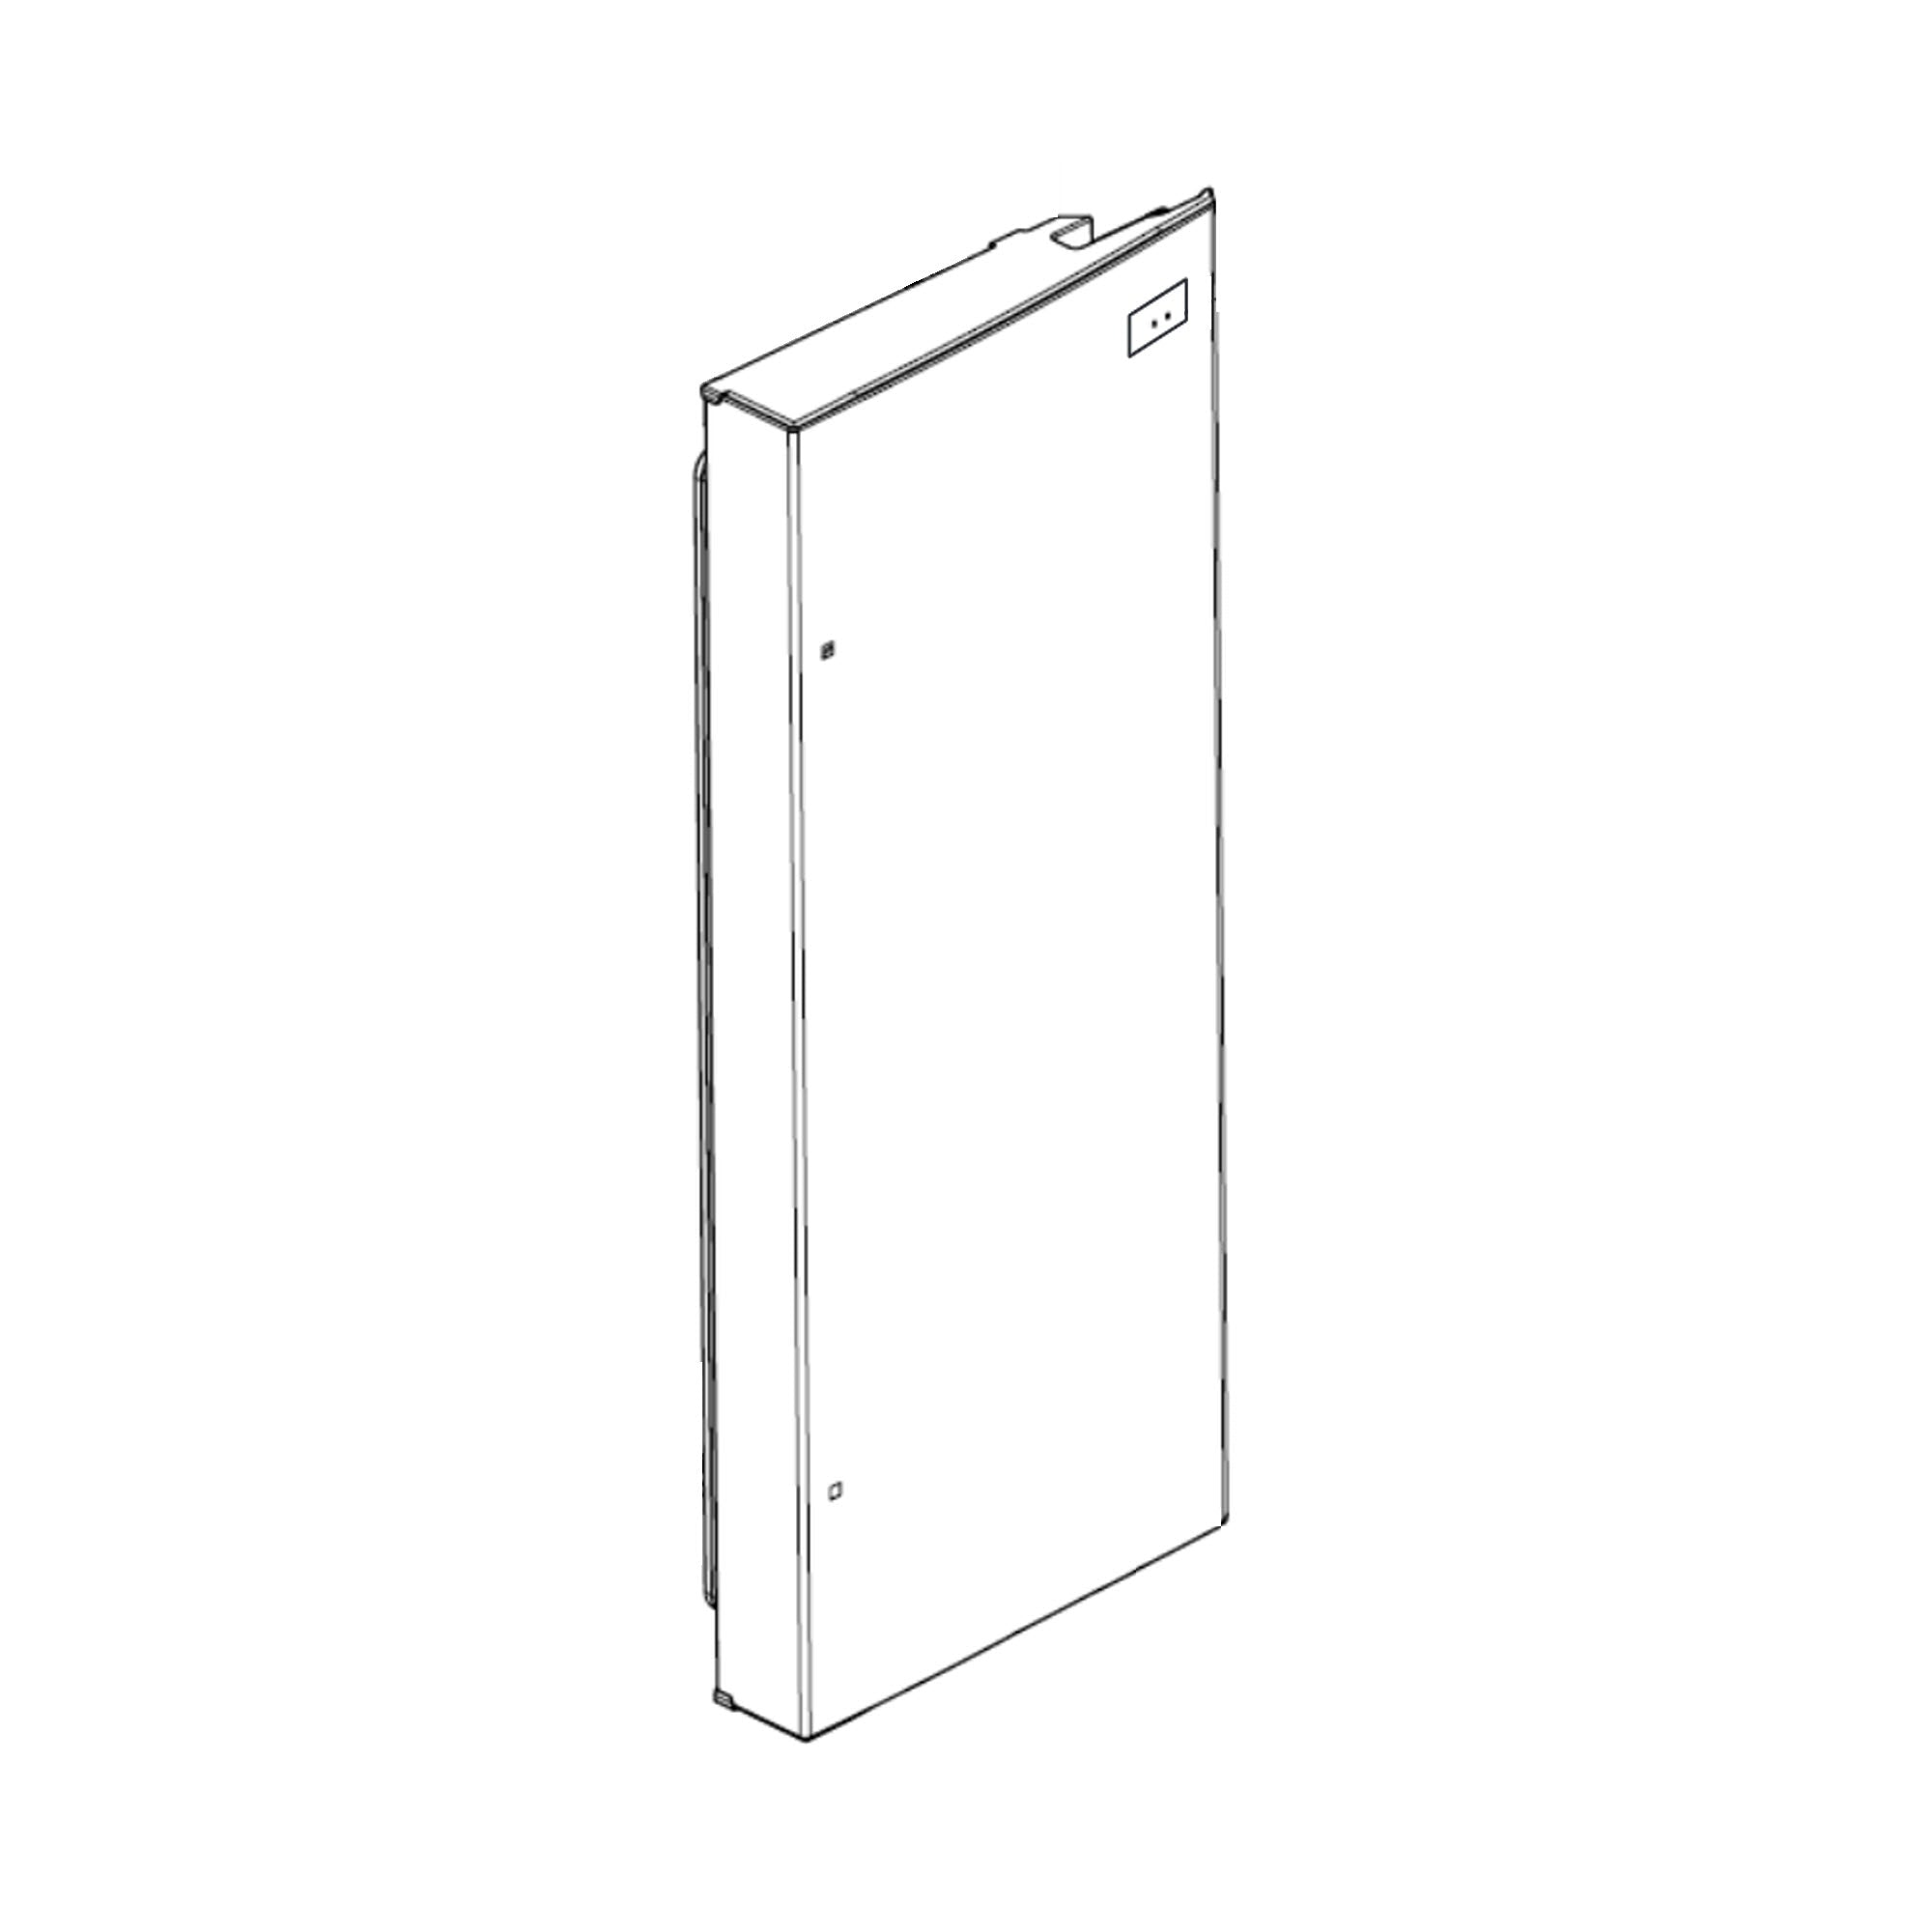 LG ADD74236513 Refrigerator Door Foam Assembly